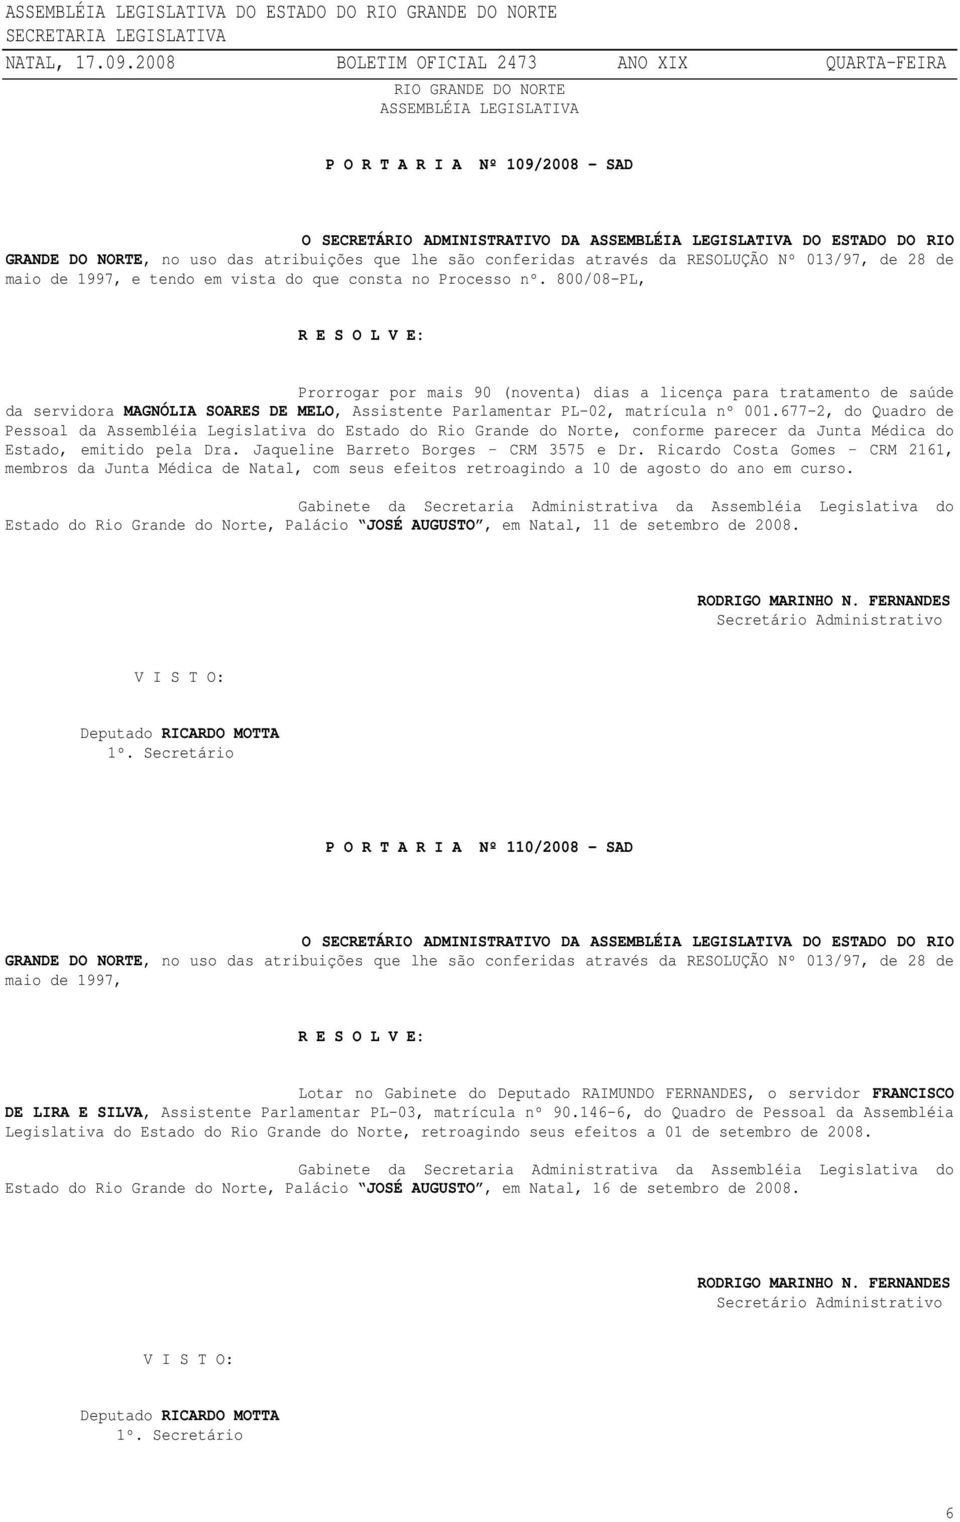 677-2, do Quadro de Pessoal da Assembléia Legislativa do Estado do Rio Grande do Norte, conforme parecer da Junta Médica do Estado, emitido pela Dra. Jaqueline Barreto Borges CRM 3575 e Dr.